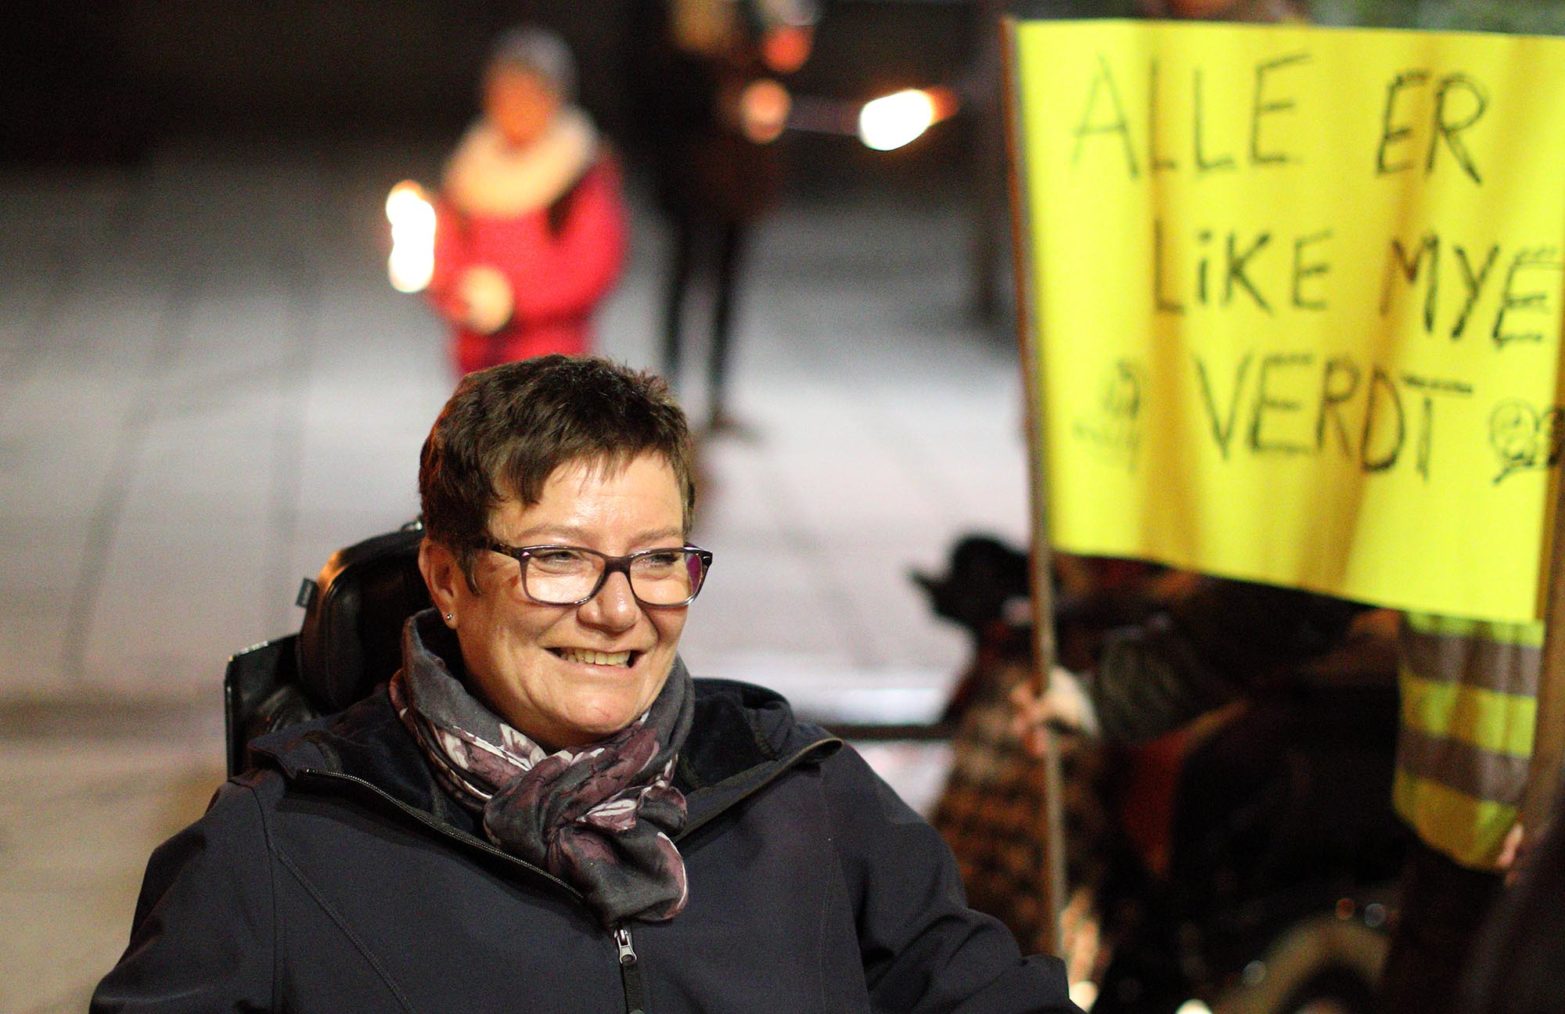 Tove Linea Brandvik med en plakat der det står «Alle er like mye verdt».